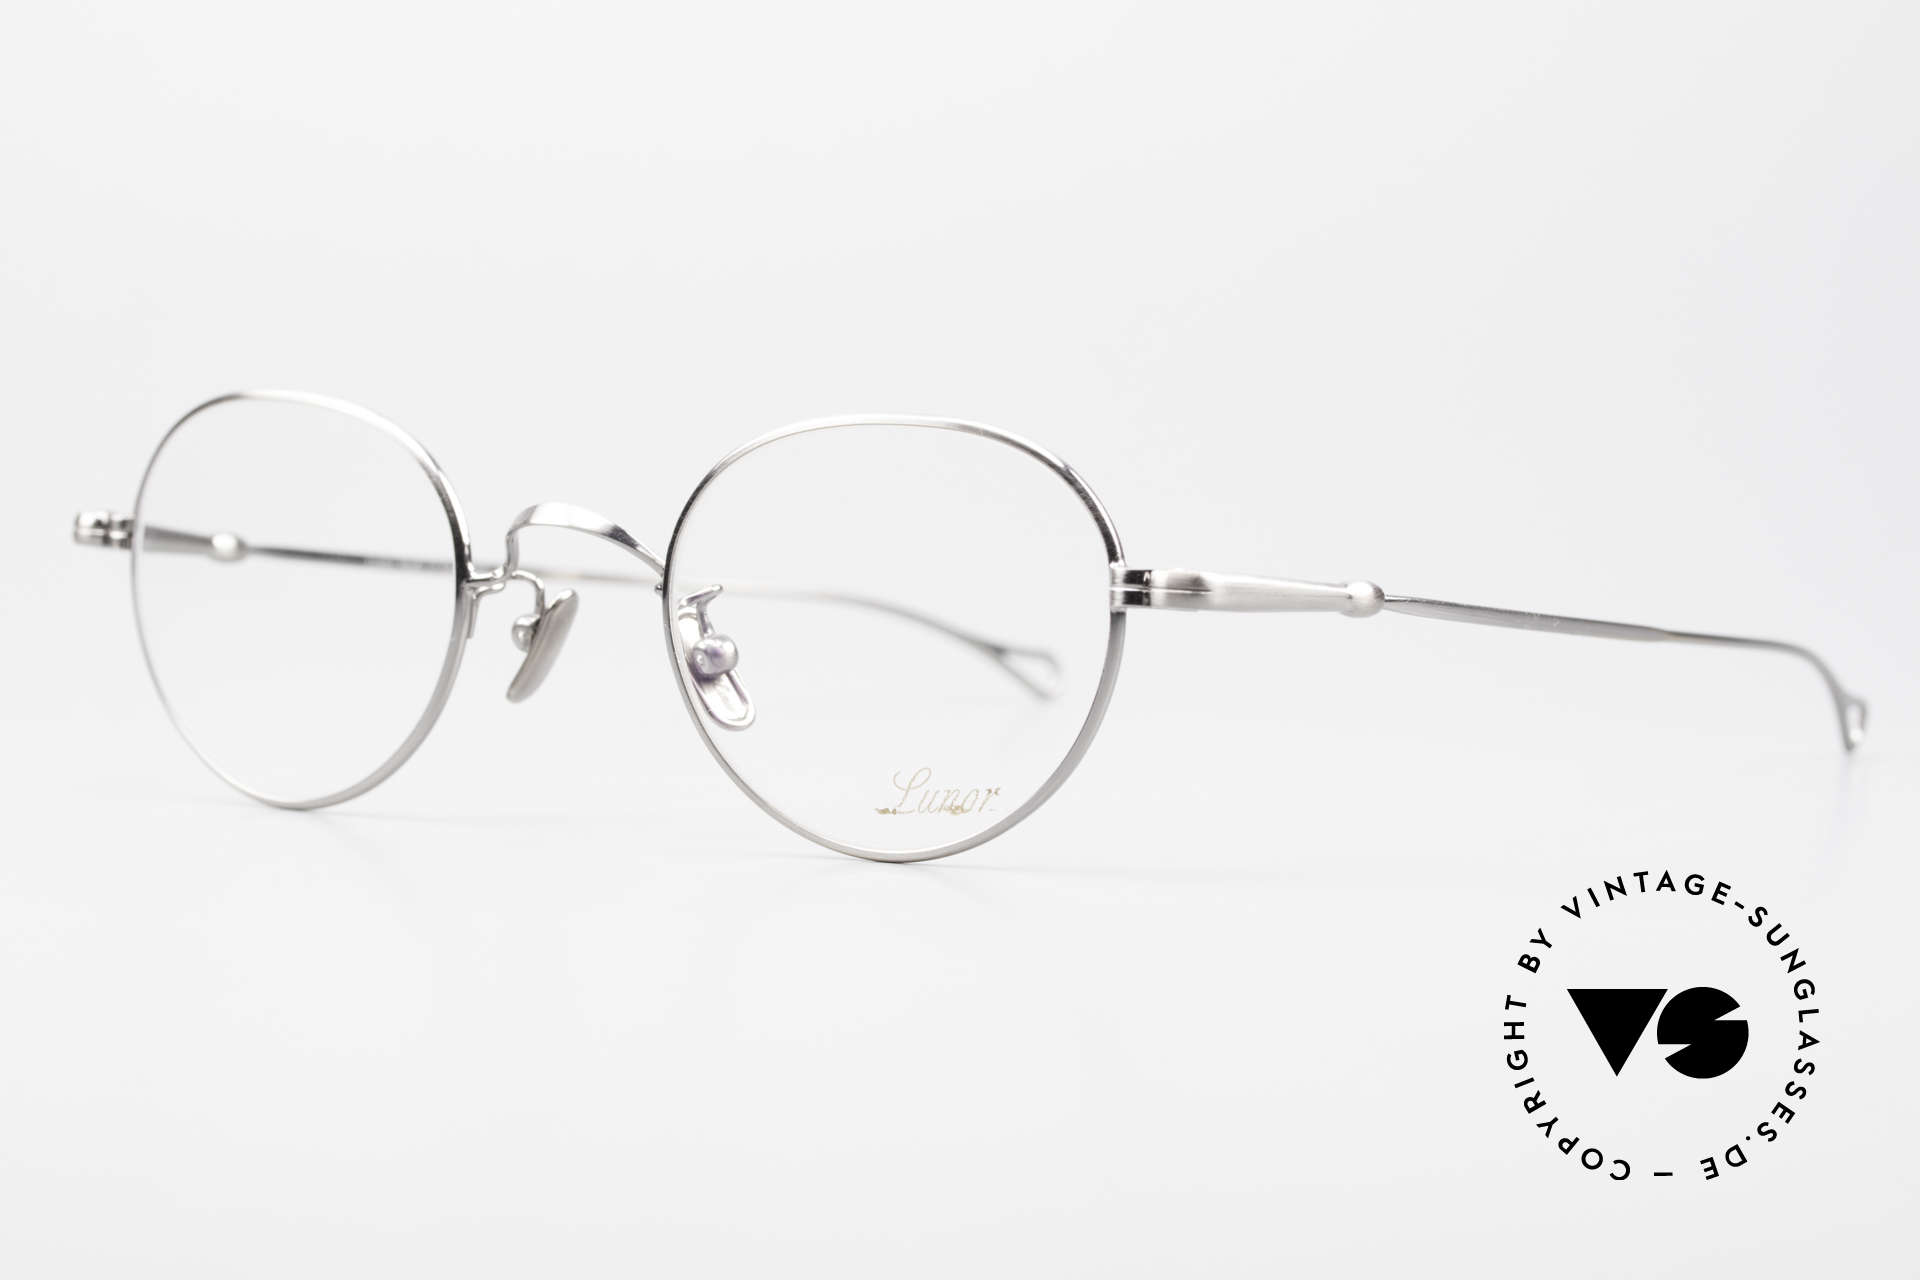 Lunor V 108 Metallbrille In Antik Silber, Modell V 108: sehr elegante Pantobrille für Herren, Passend für Herren